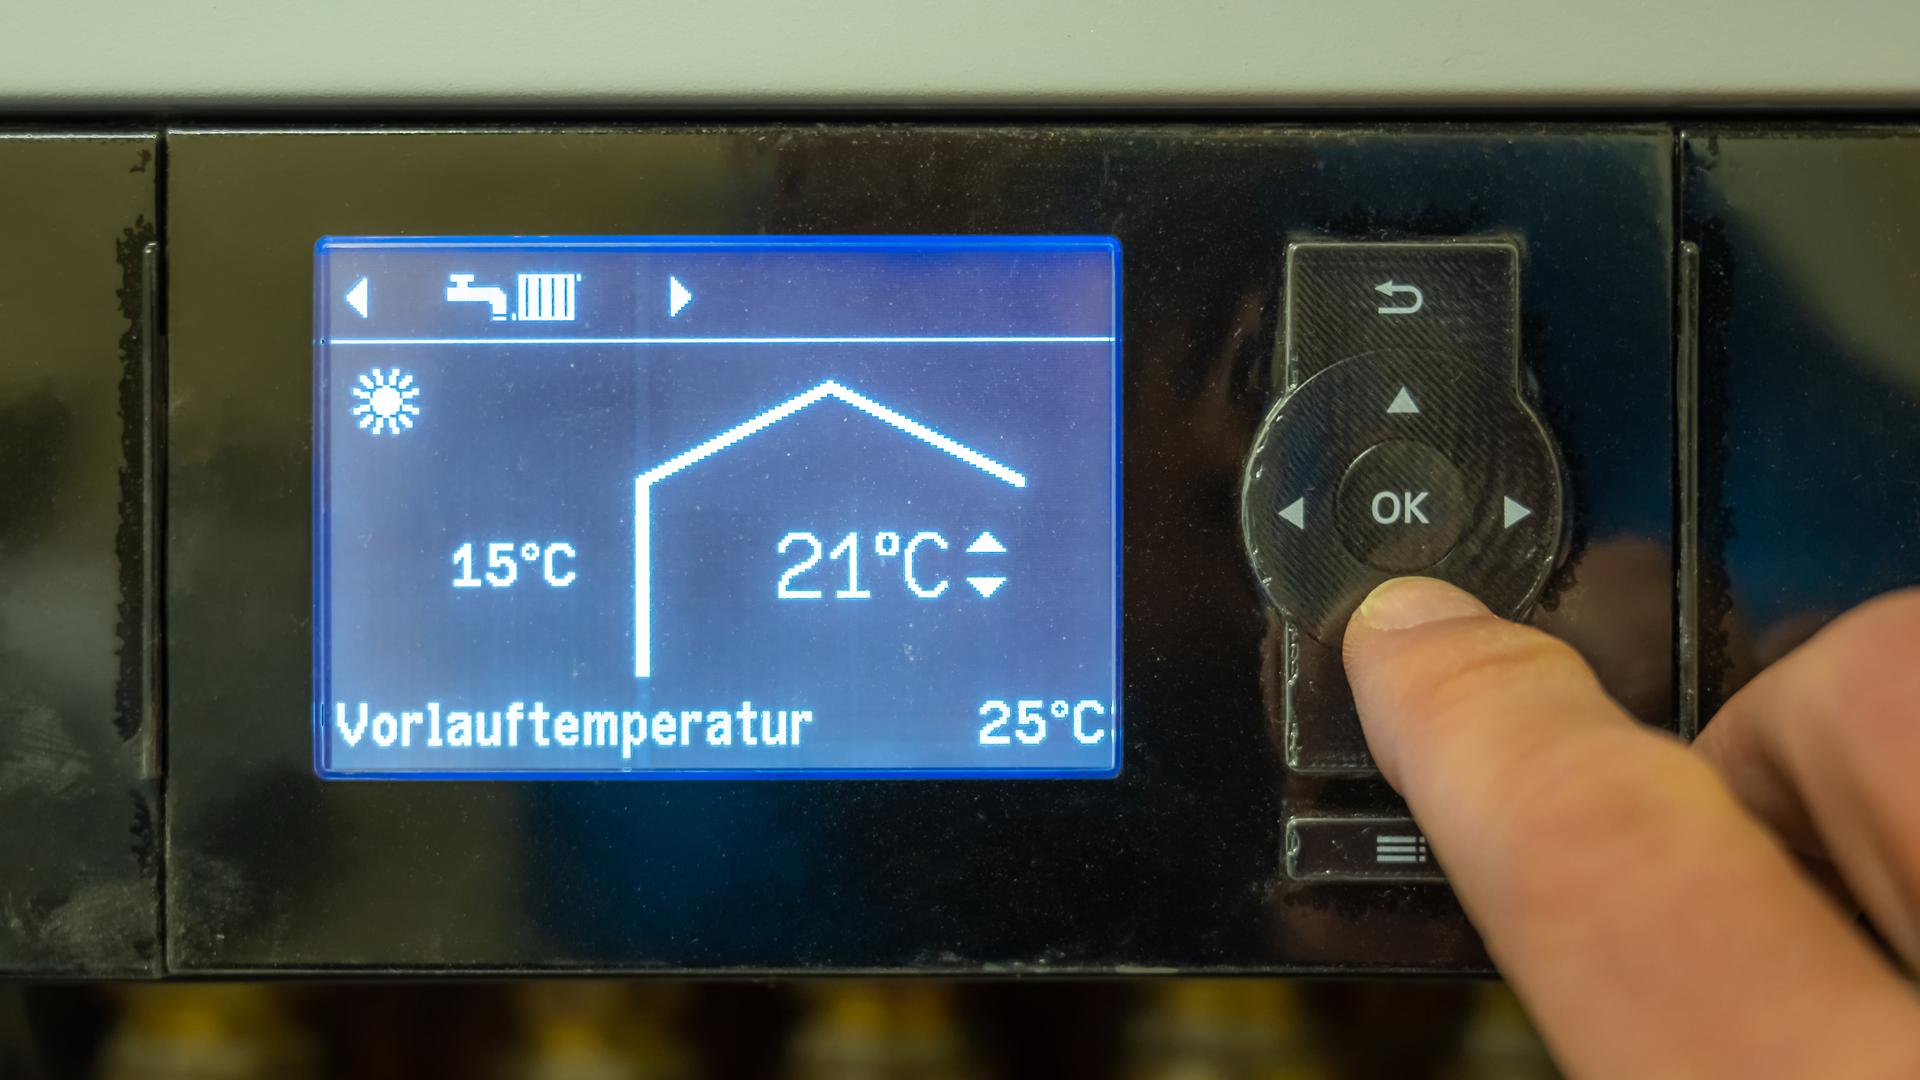 Das Konfigurationsdisplay einer modernen Wärmepumpe mit den Einstellungen zur Vorlauftemperatur.